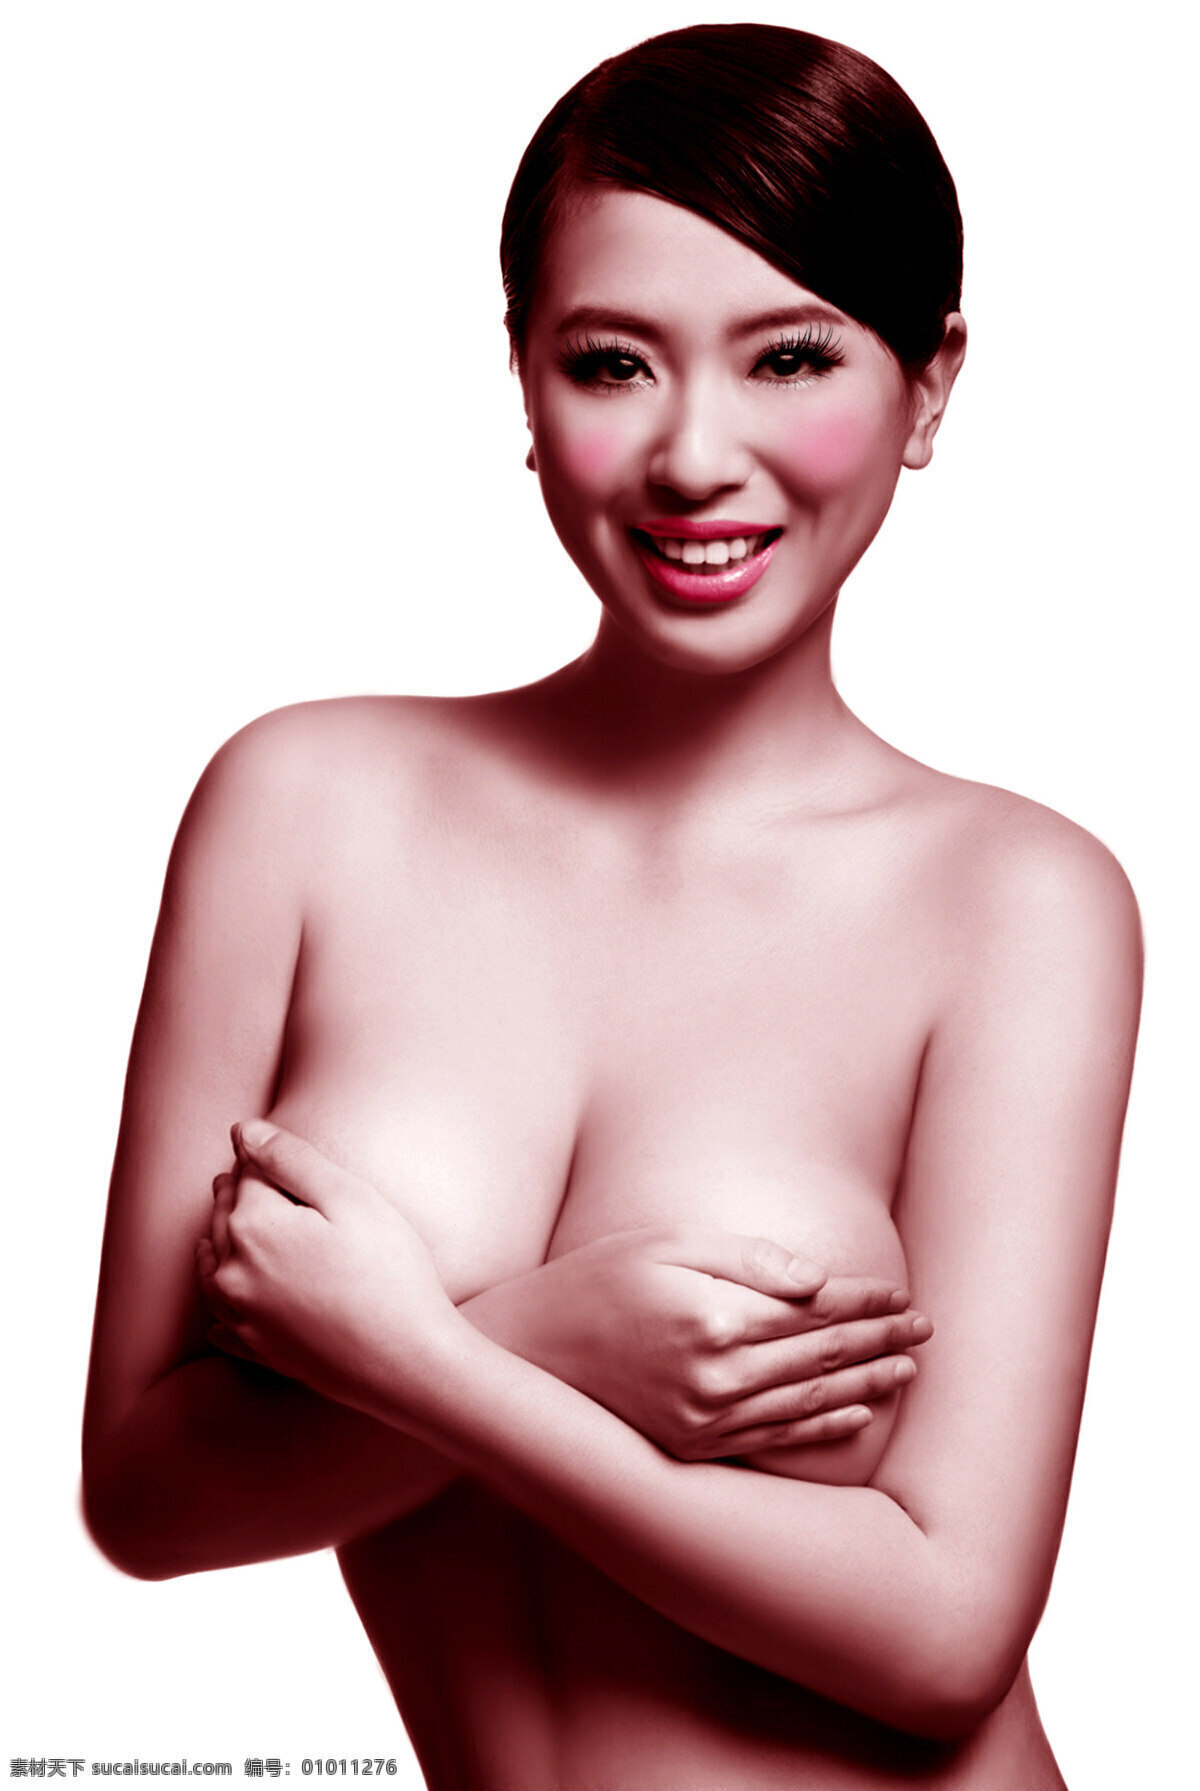 红丝 带 公益 宣传 中华红丝带 防治艾滋 青春 性感 健美 健康 乳腺癌 美女 女性女人 人物图库